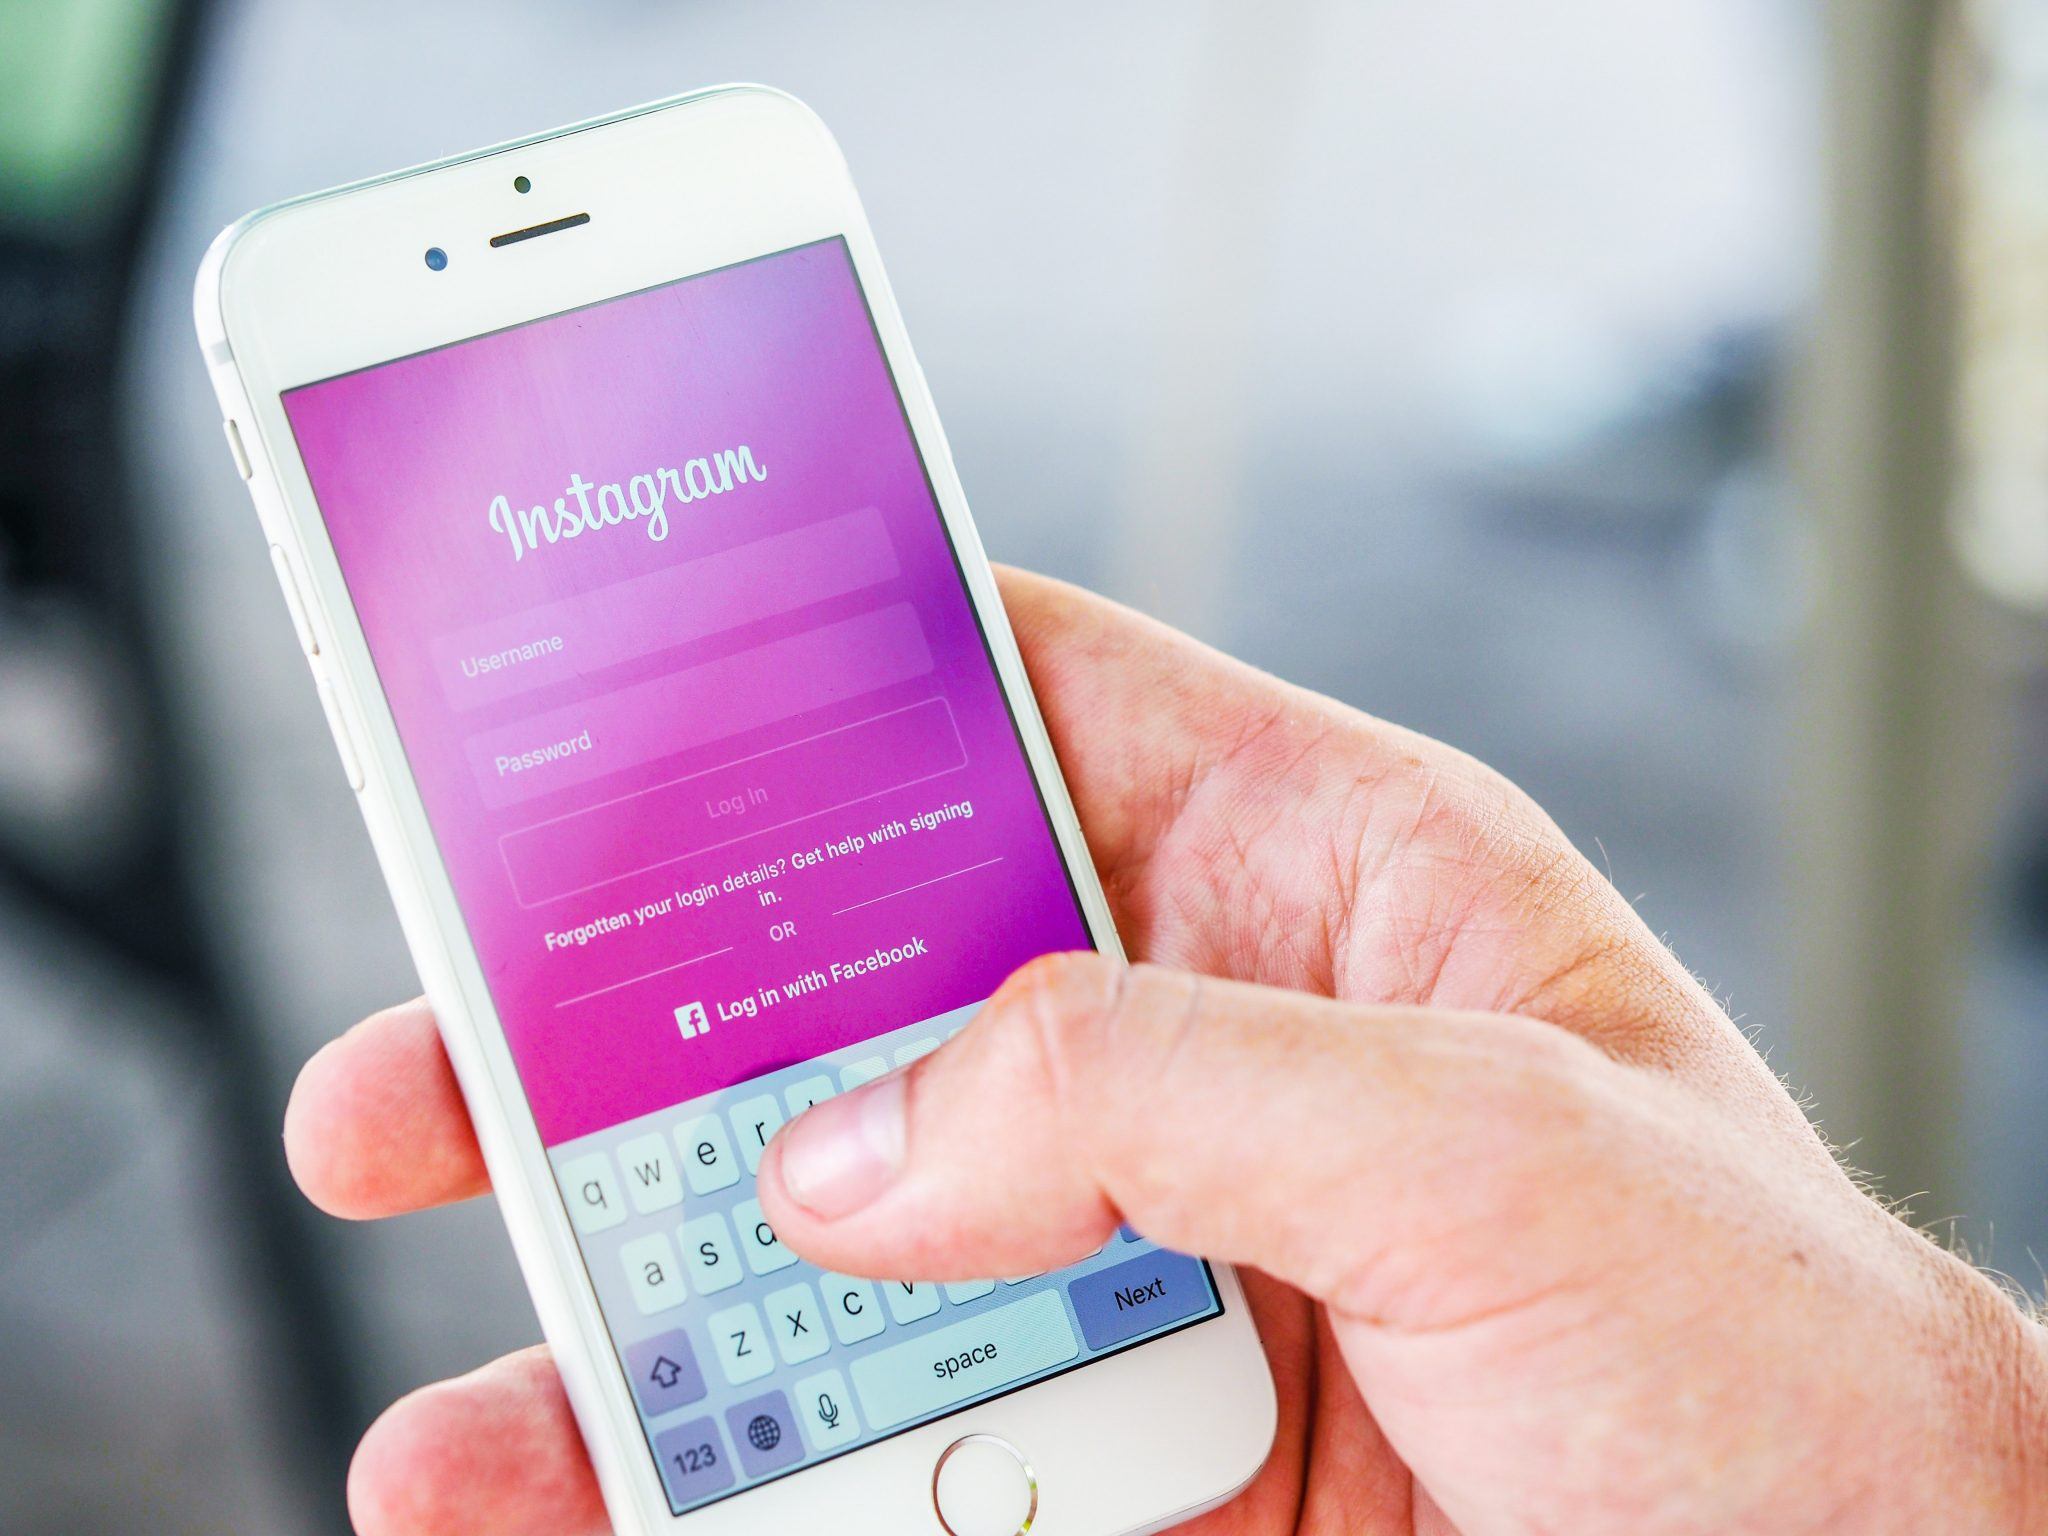 Gizli Instagram hesaplarının paylaşımları herkes tarafından görülebilir -  Teknoblog